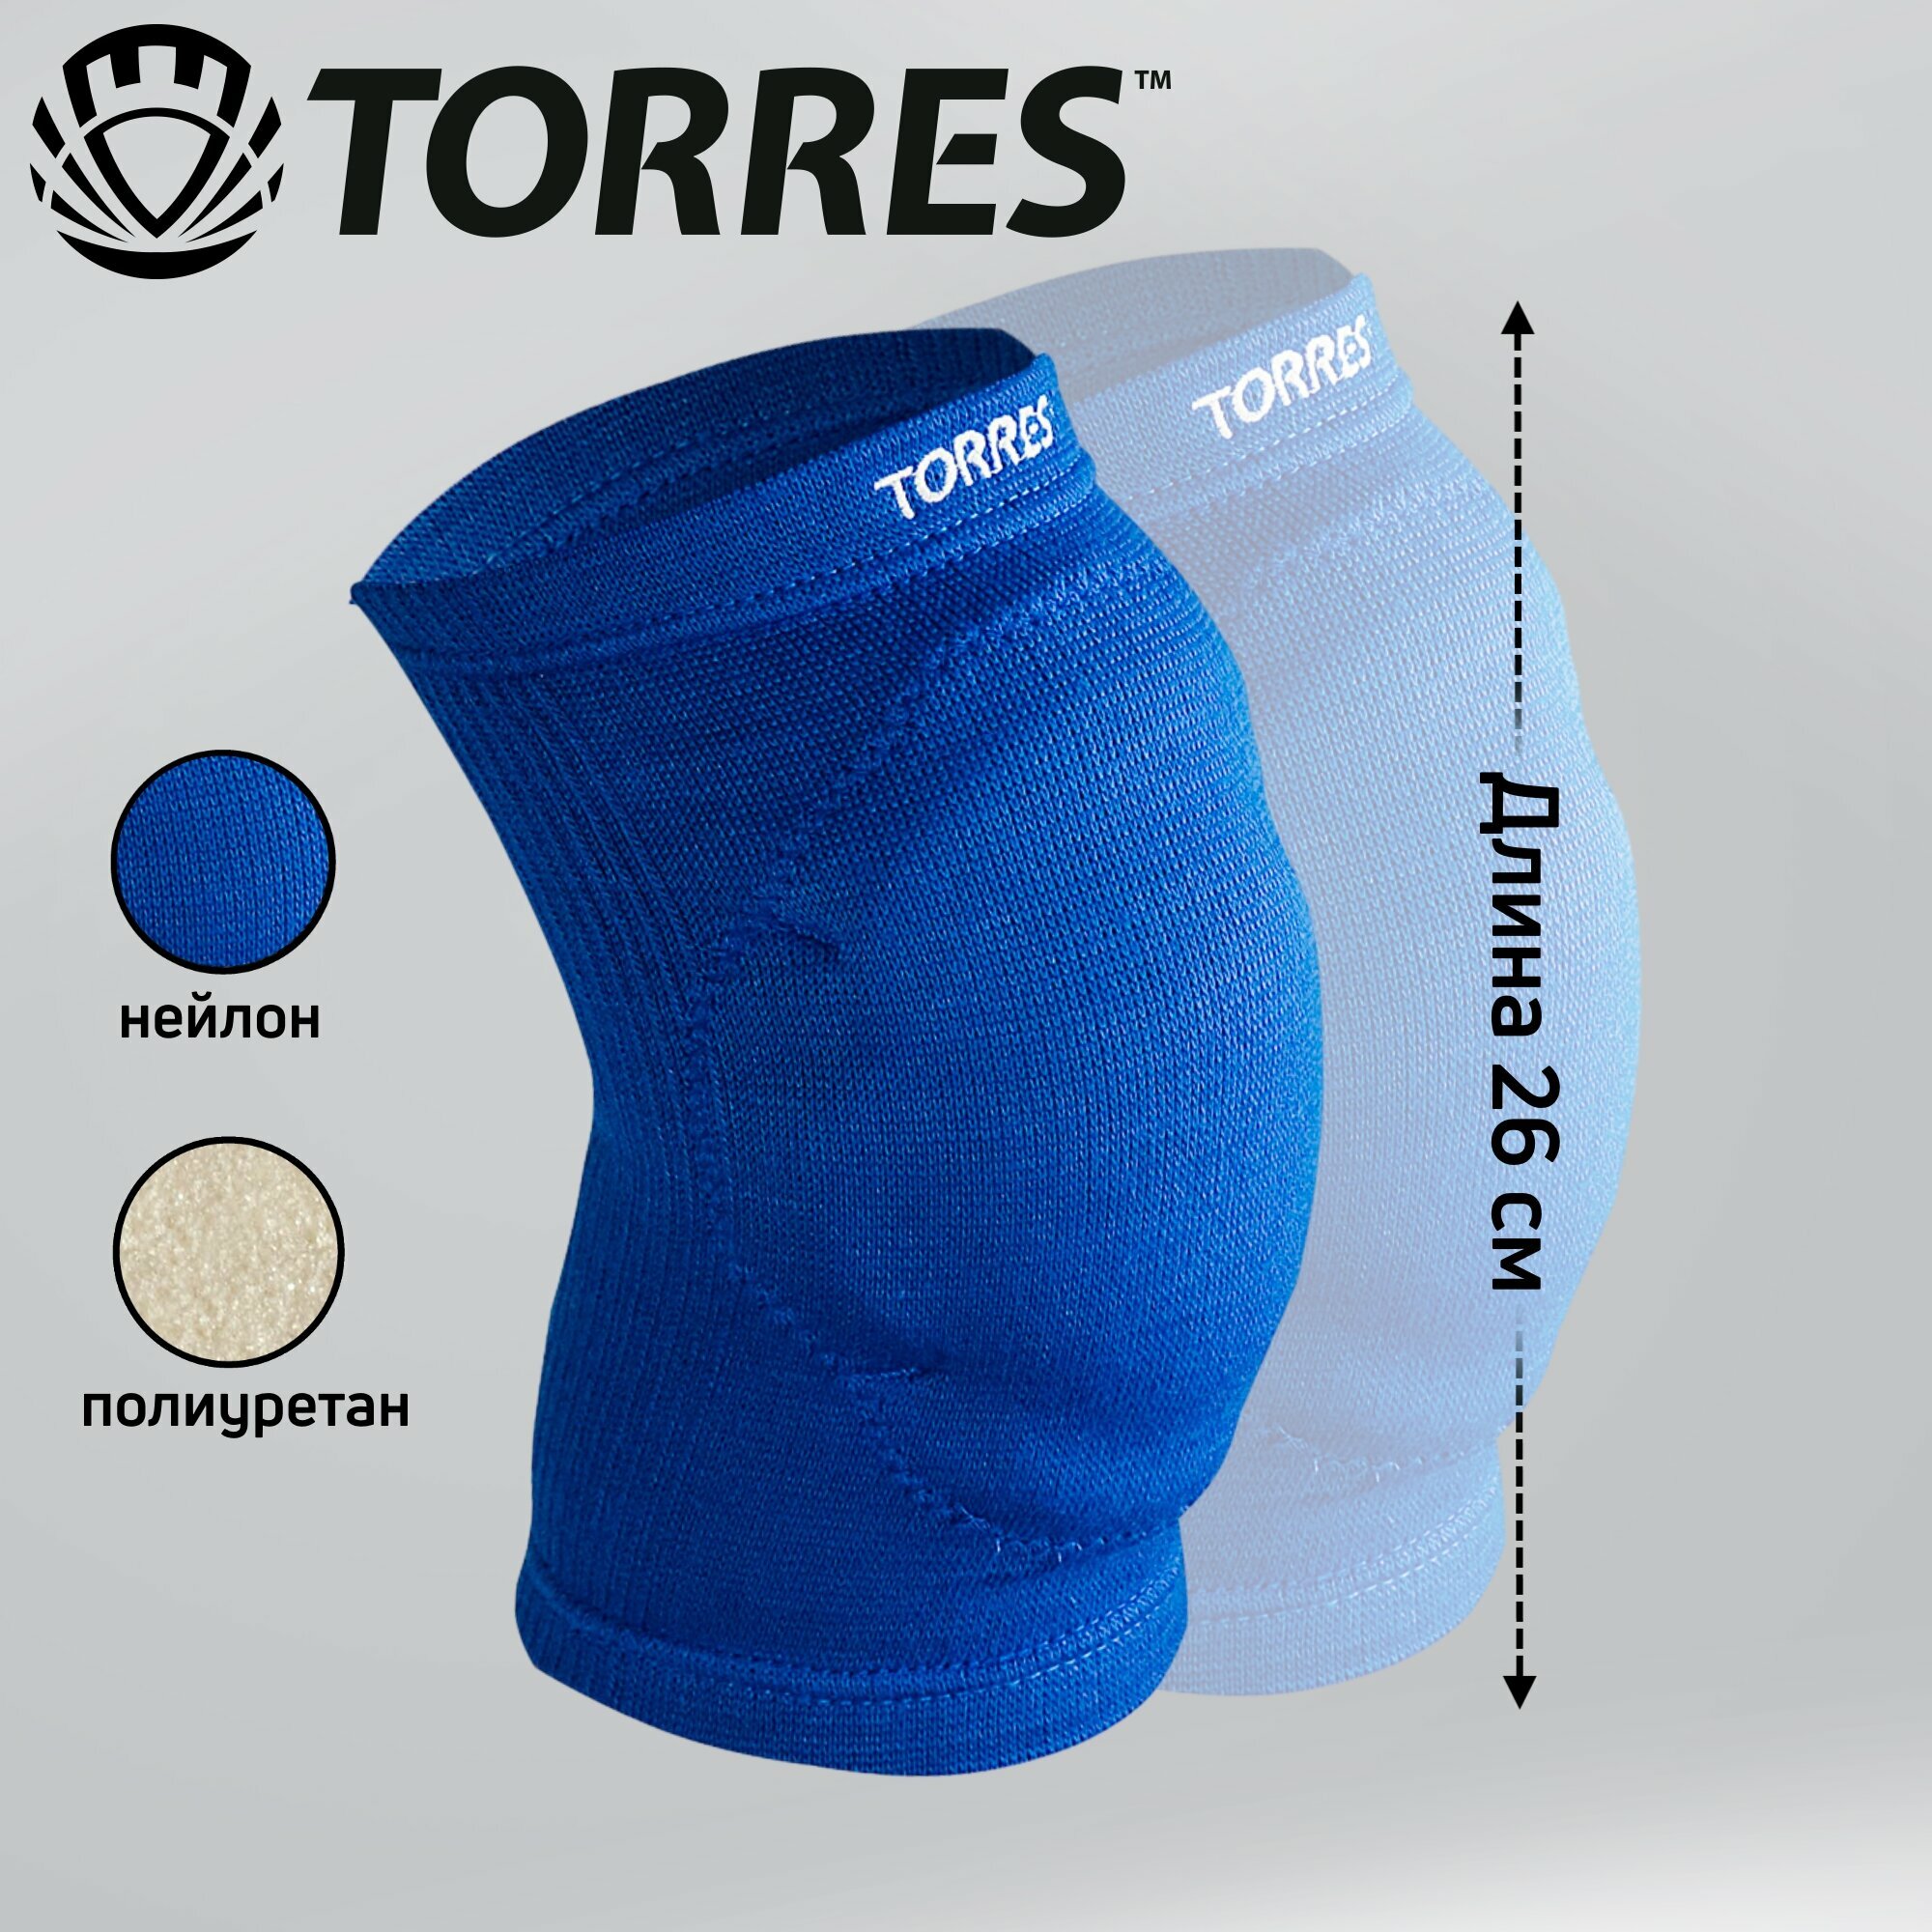   Torres Pro Gel .PRL11018S-03